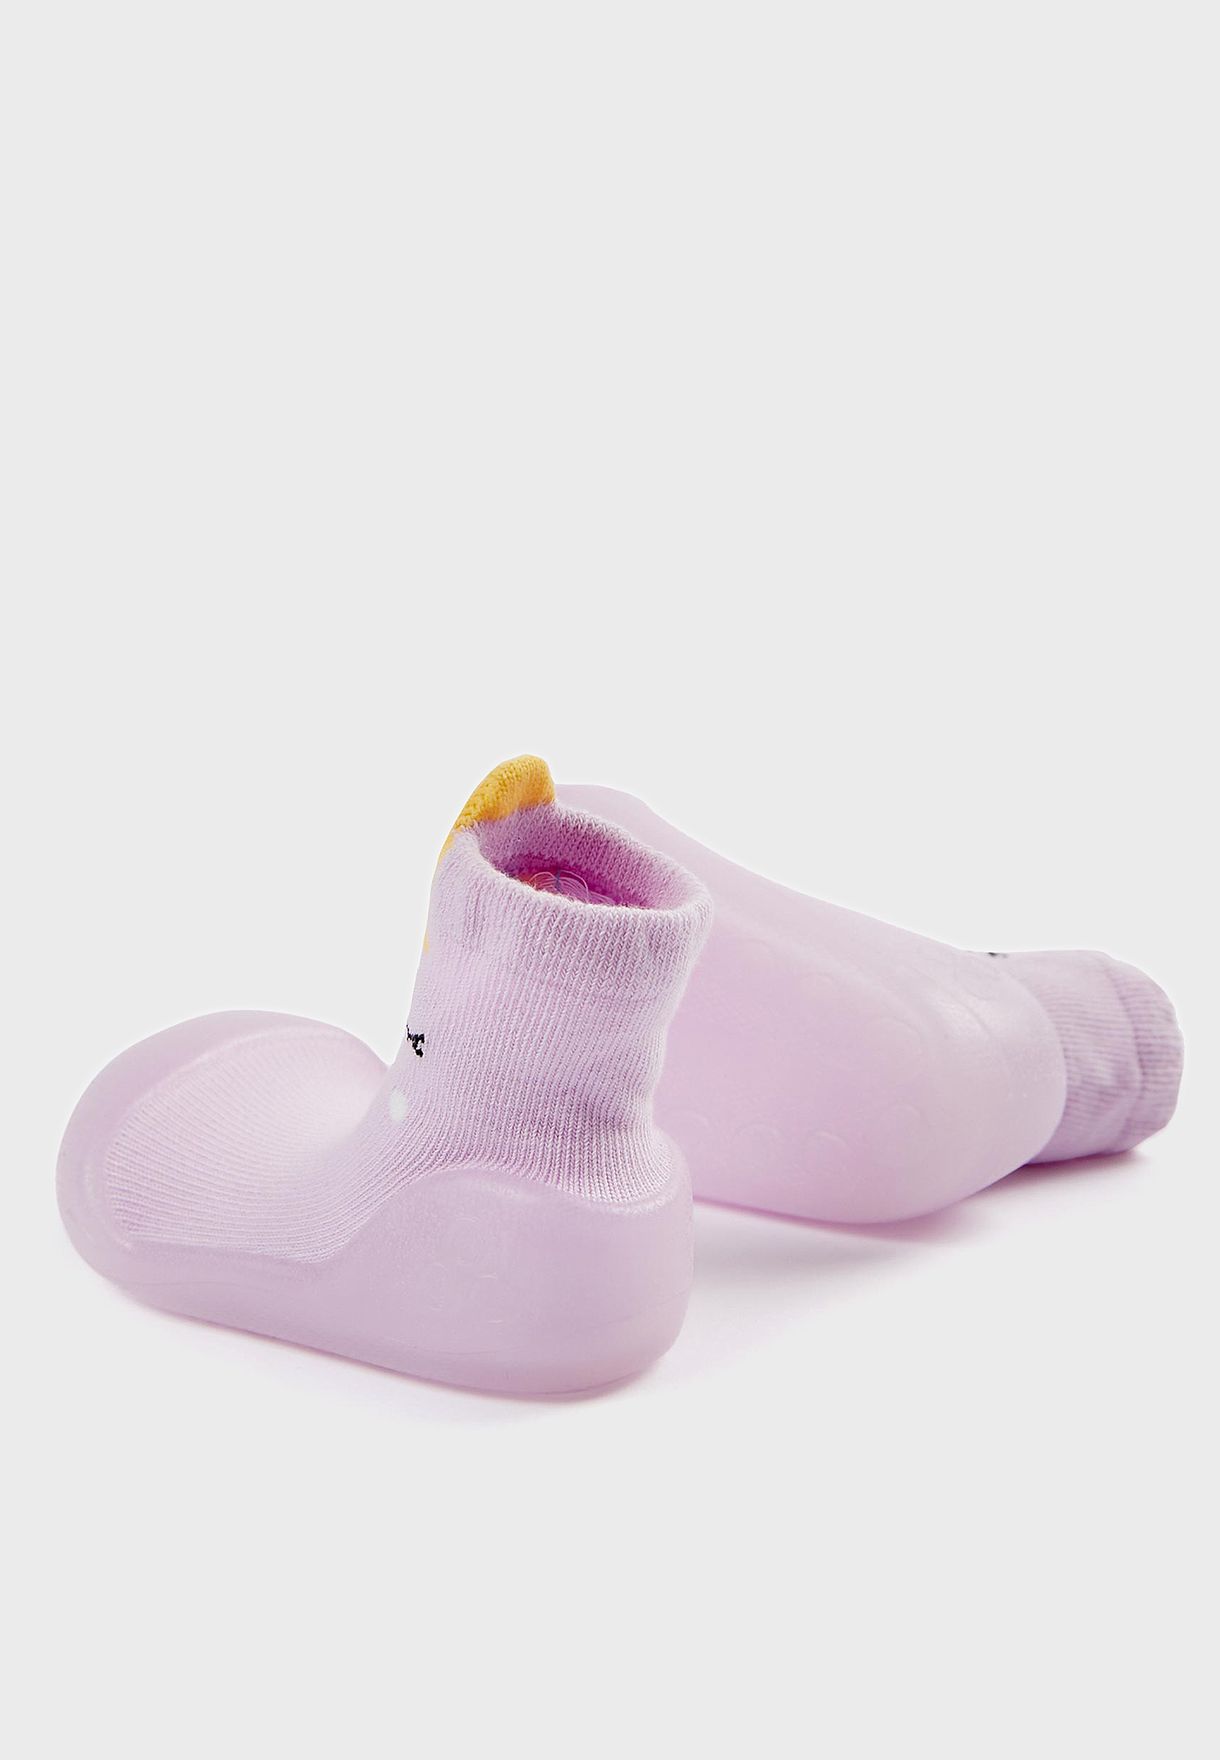 حذاء سهل الارتداء بطبعة يونكورن لحديثي الولادة